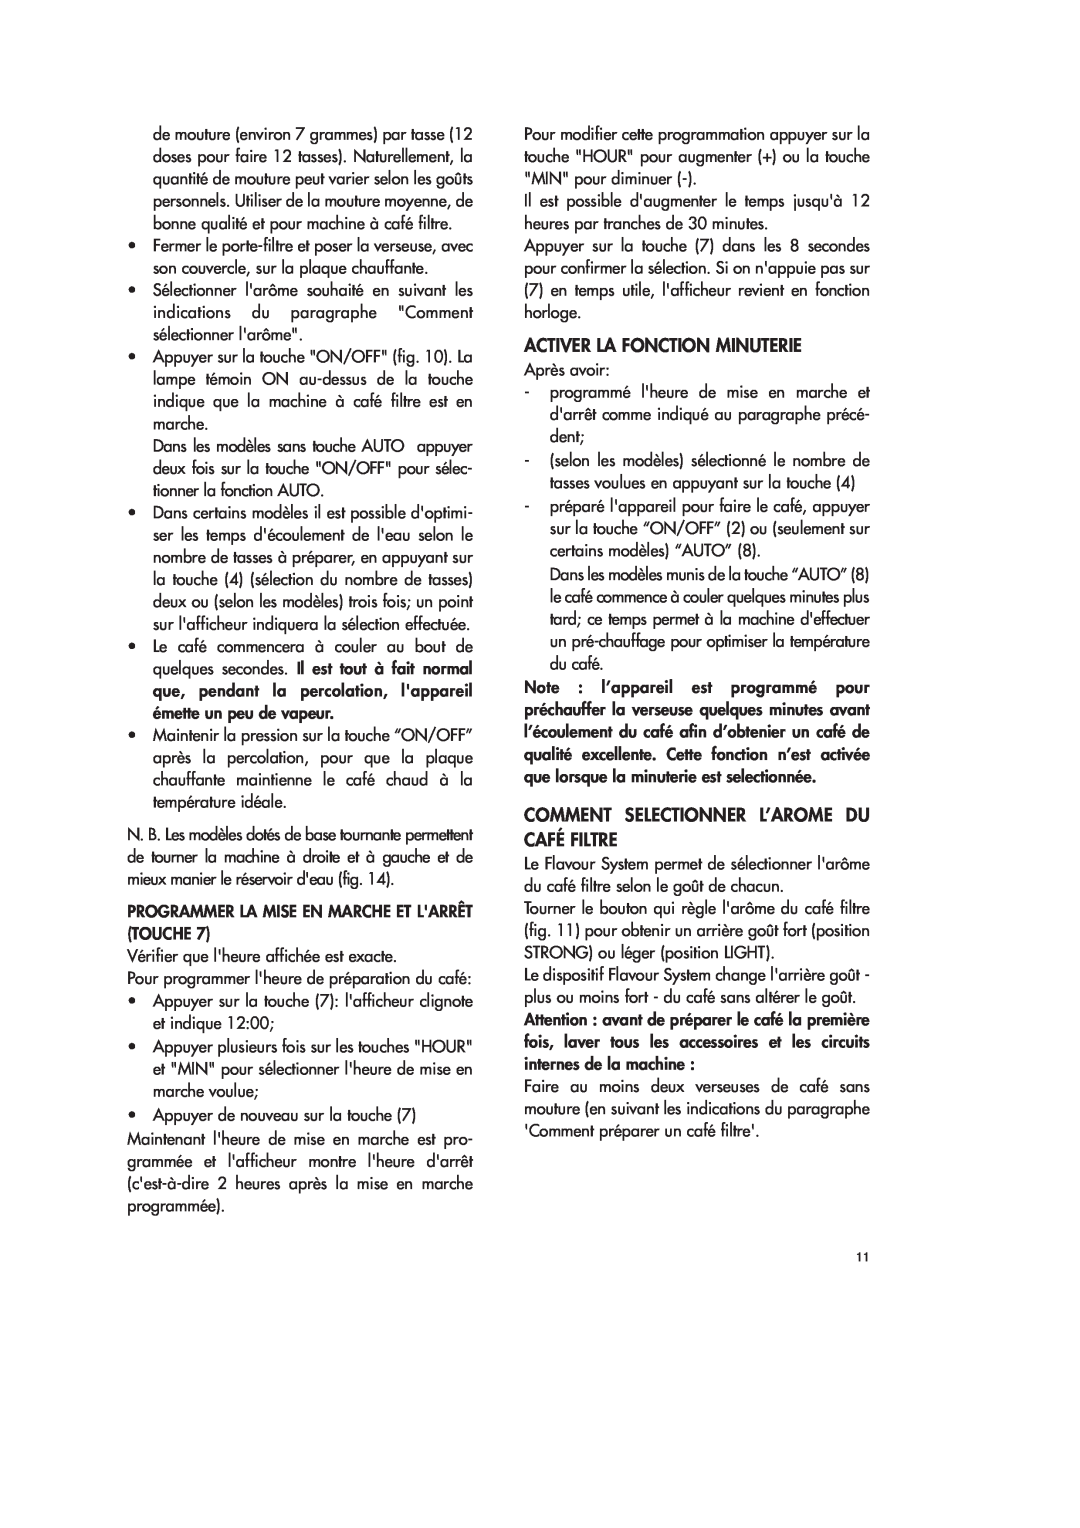 DeLonghi ICM18 WB instruction manual Activer La Fonction Minuterie, Comment Selectionner L’Arome Du Café Filtre 